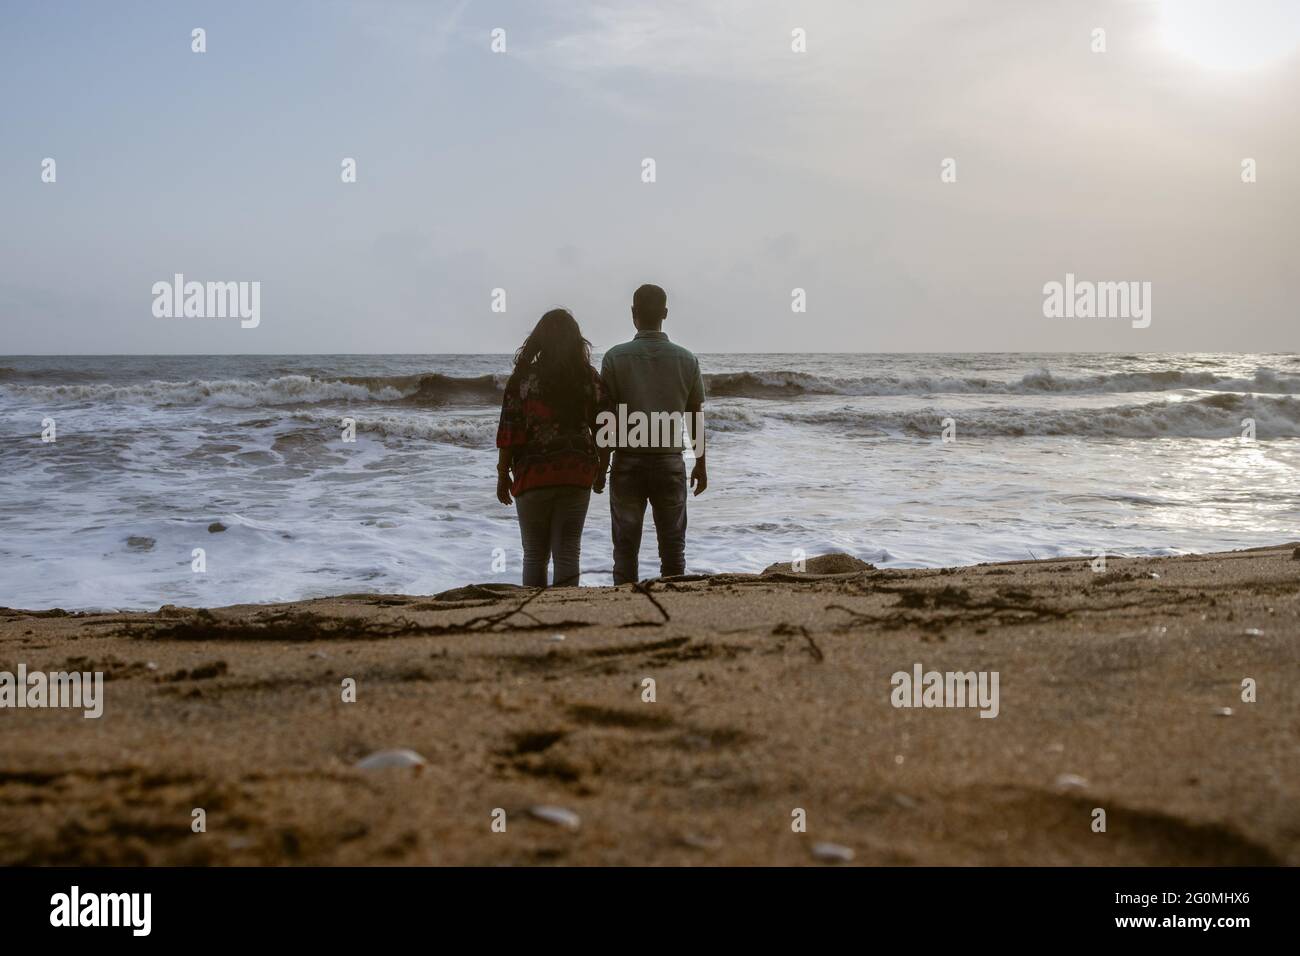 Das Paar hält sich die Hand und nimmt das natürliche Meeresbild auf, das im kochi kerala india aufgenommen wurde und die Liebe des Paares in der wahren Natur zeigt Stockfoto